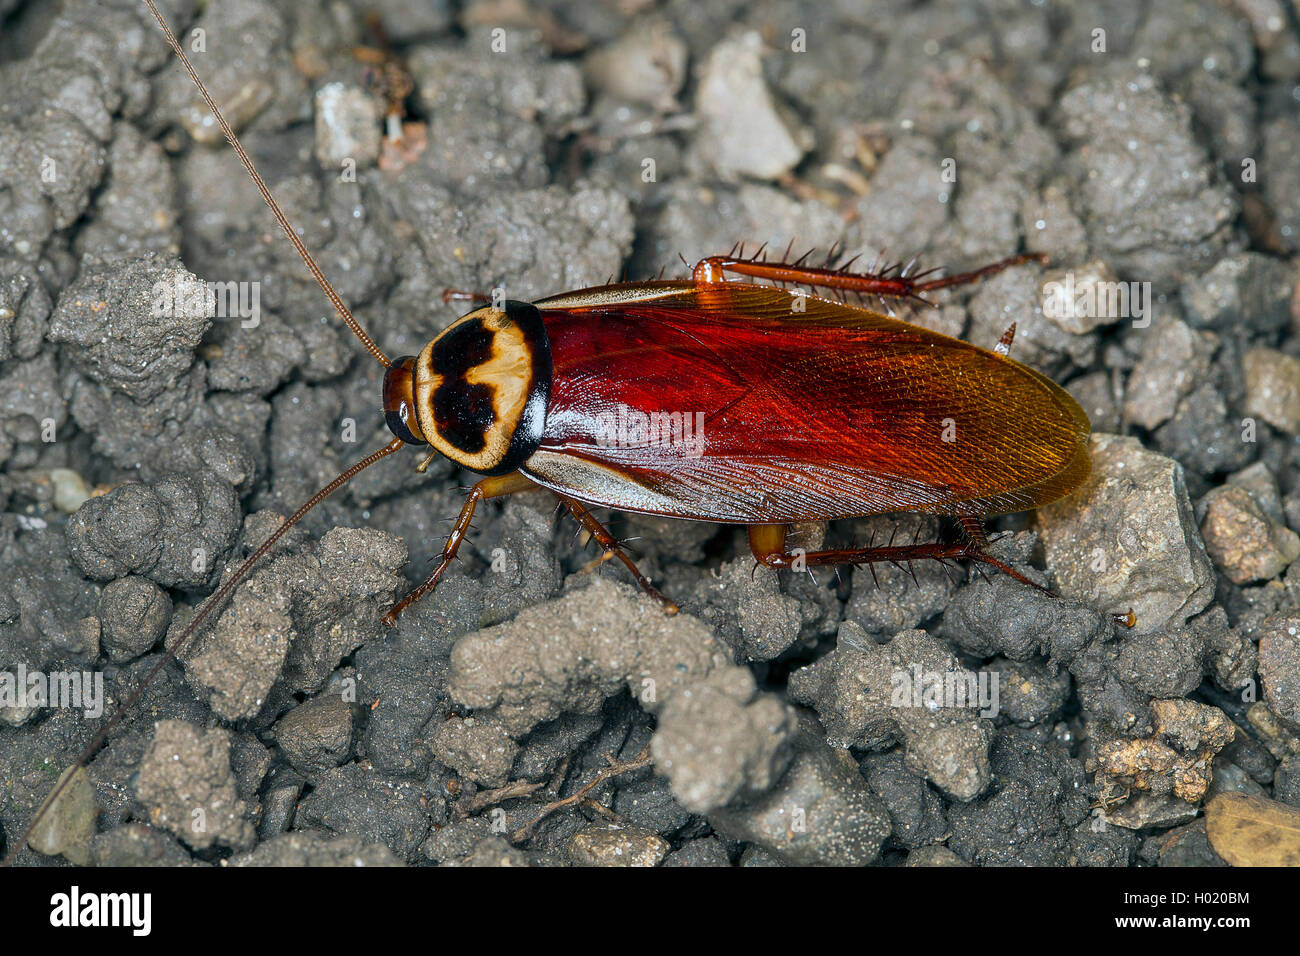 Australian cockroach (Periplaneta australasiae, Blatta australasiae), on the ground, Austria Stock Photo